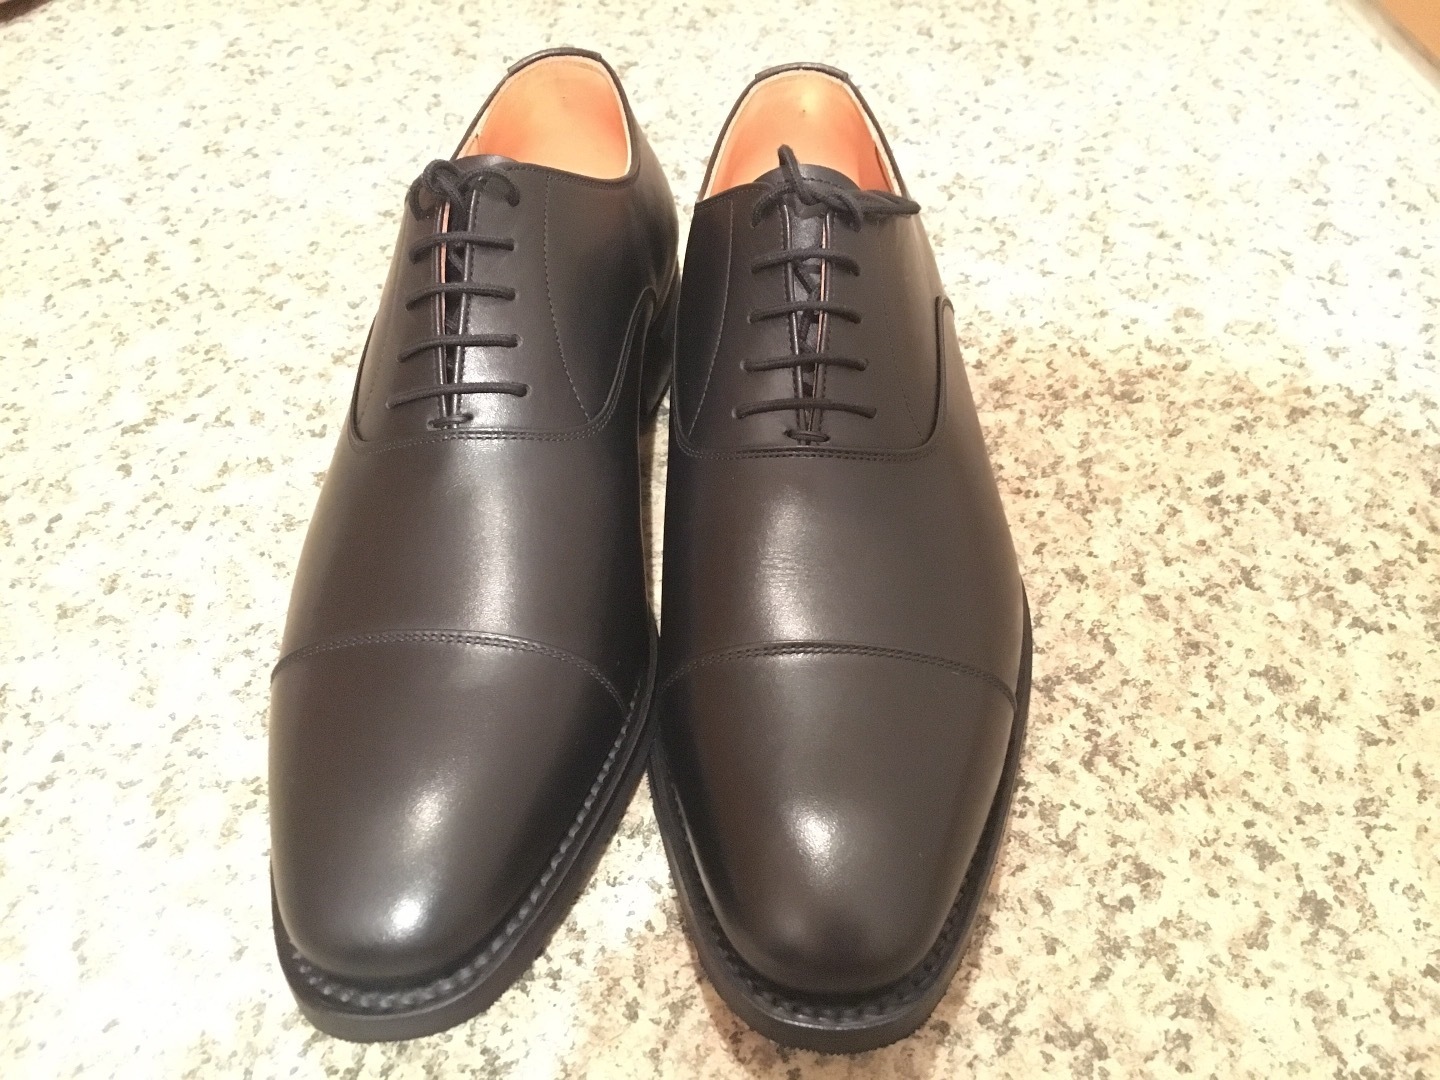 SCOTCH GRAIN(スコッチグレイン) R-1813: 革靴エトセトラ